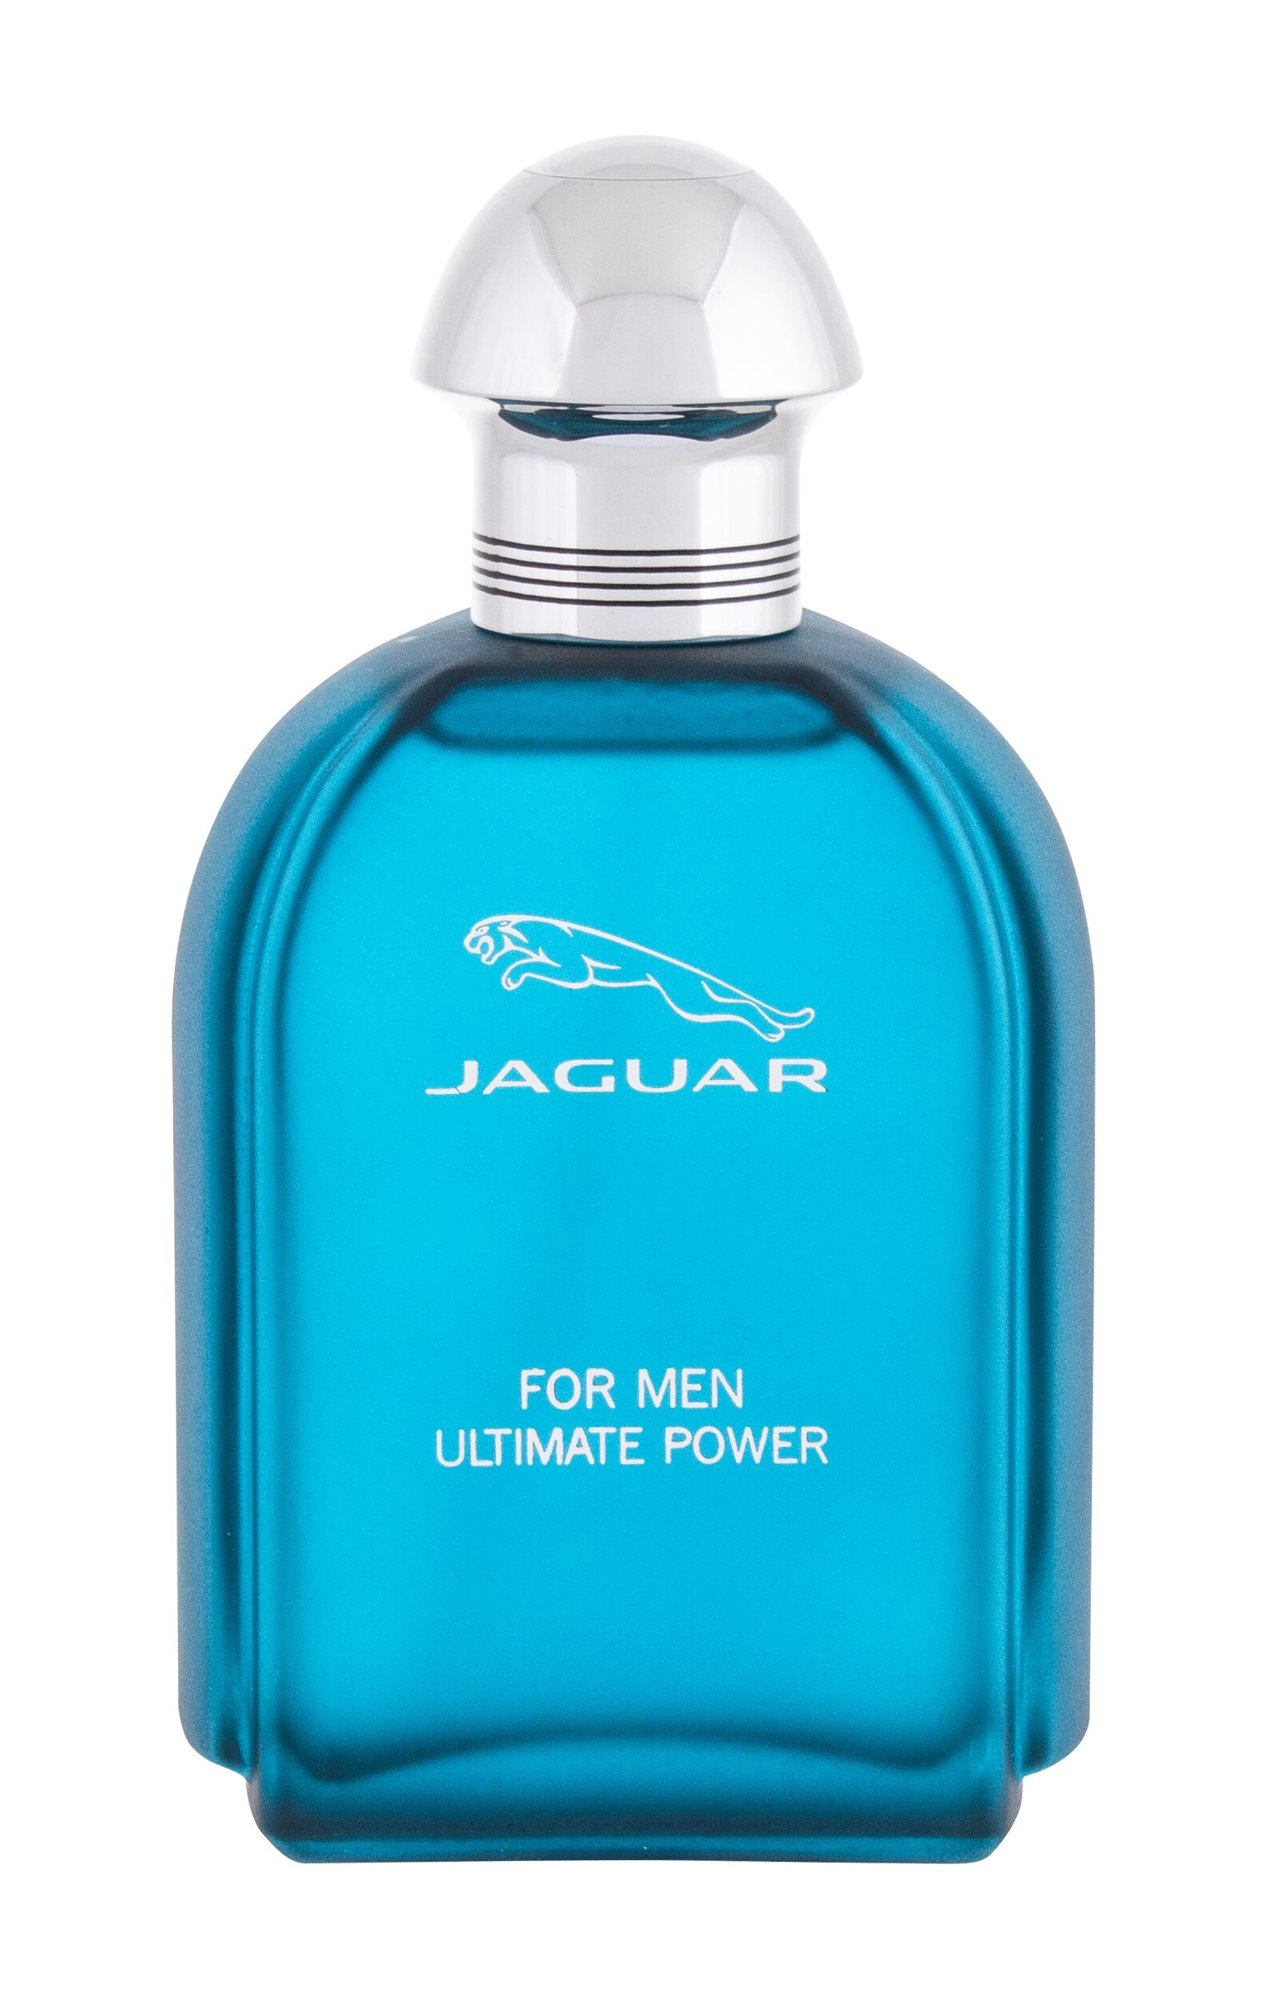 Jaguar For Men